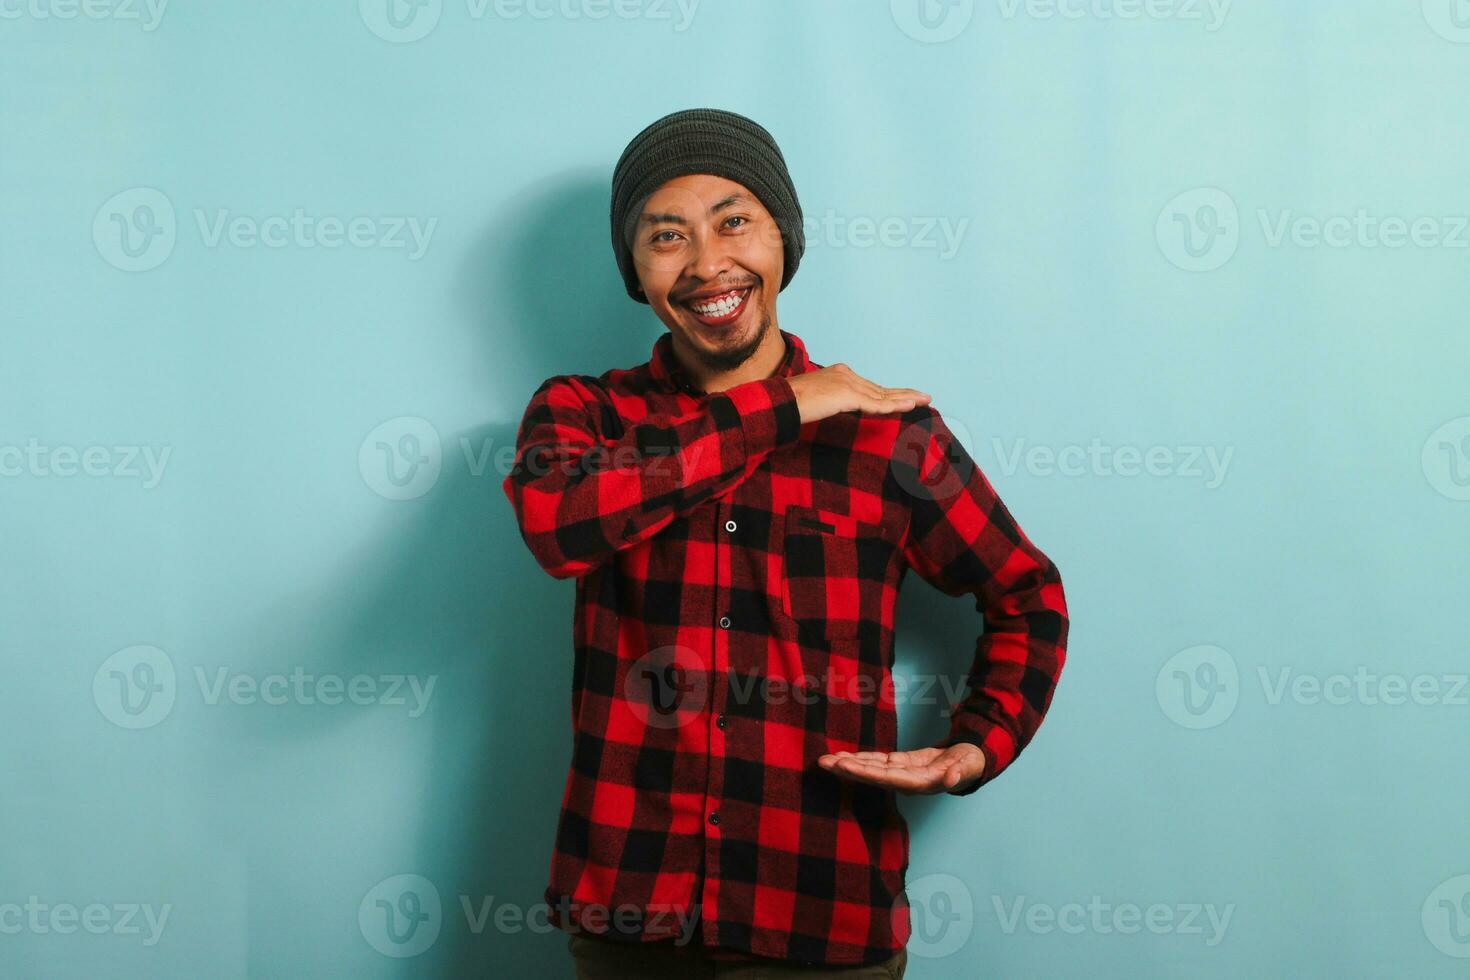 jovem ásia homem com gorro chapéu e vermelho xadrez flanela camisa gesticulando uma placa do Tamanho com ambos mãos, medindo algo, isolado em uma azul fundo foto